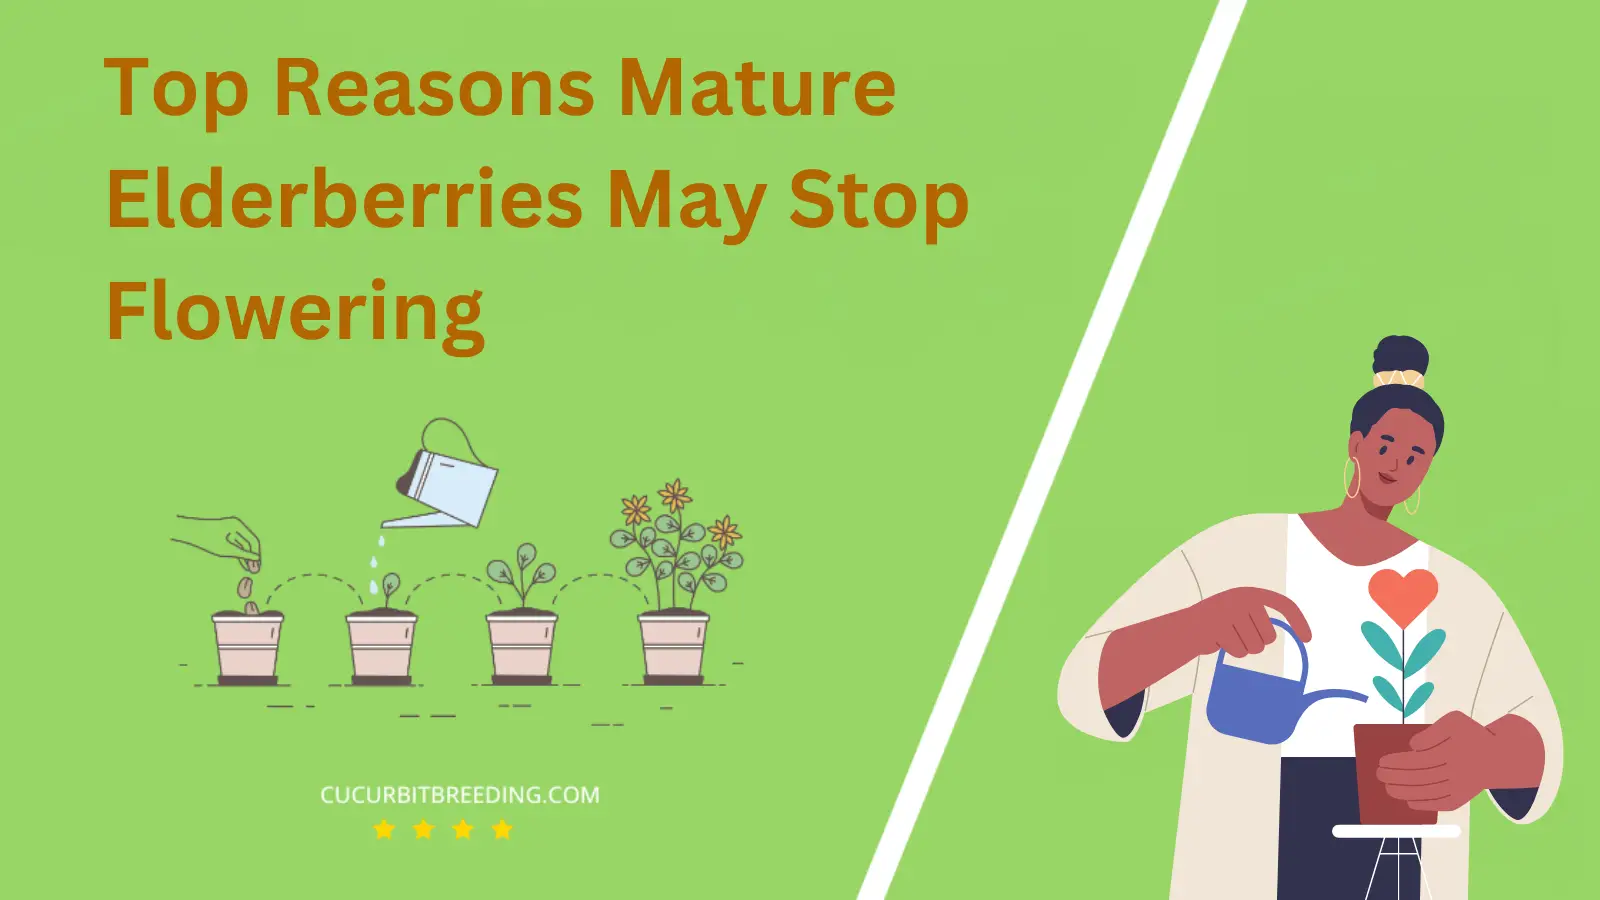 Top Reasons Mature Elderberries May Stop Flowering